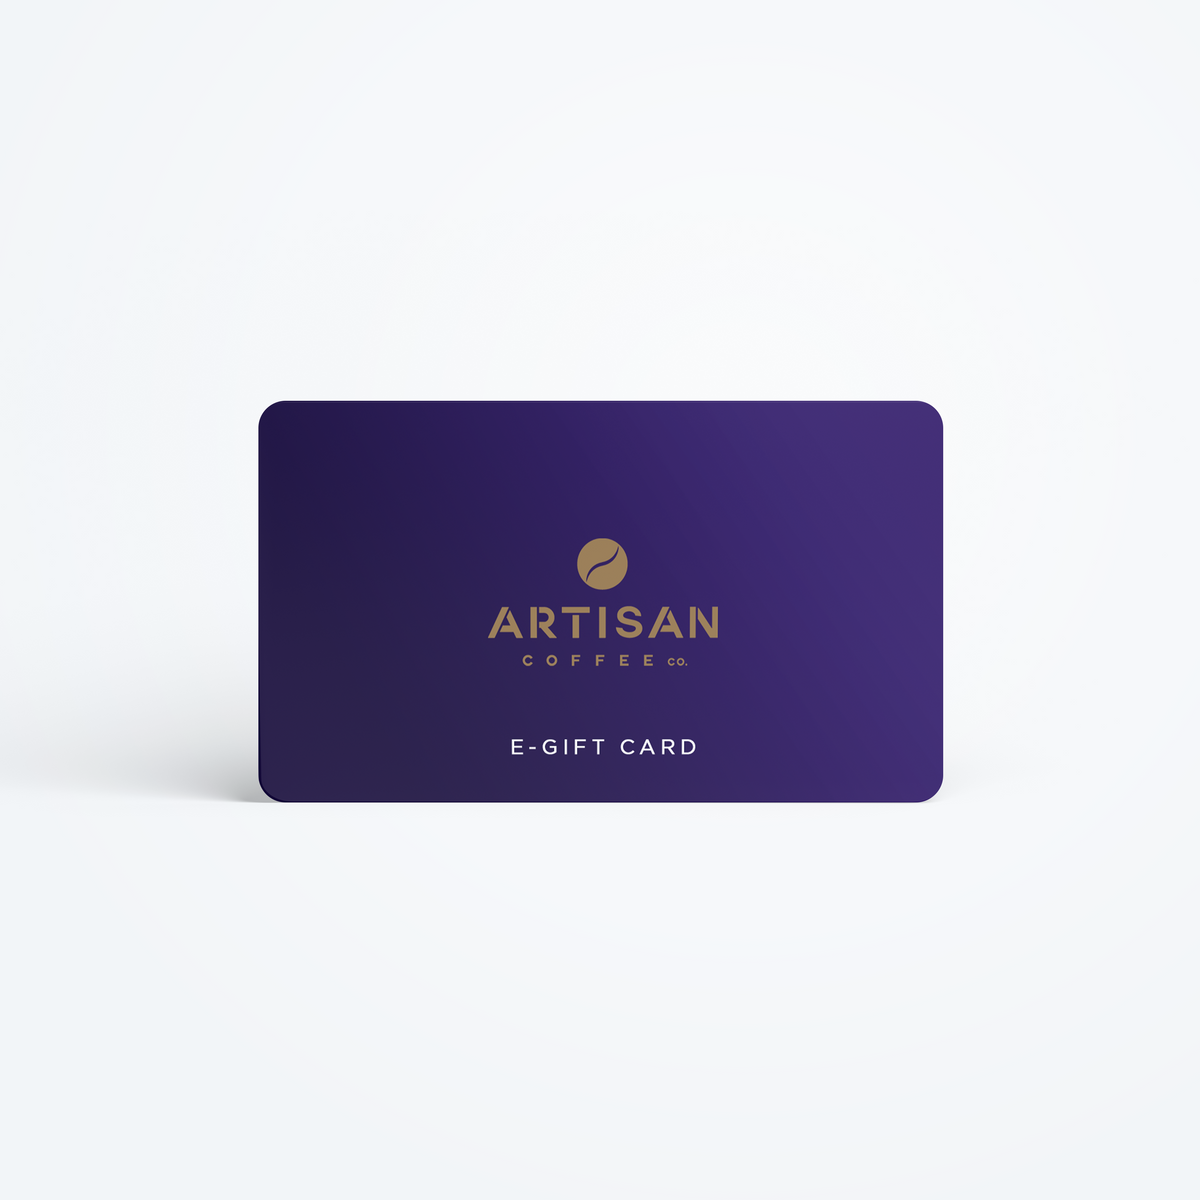 Artisan Coffee Co. E-Gift Card